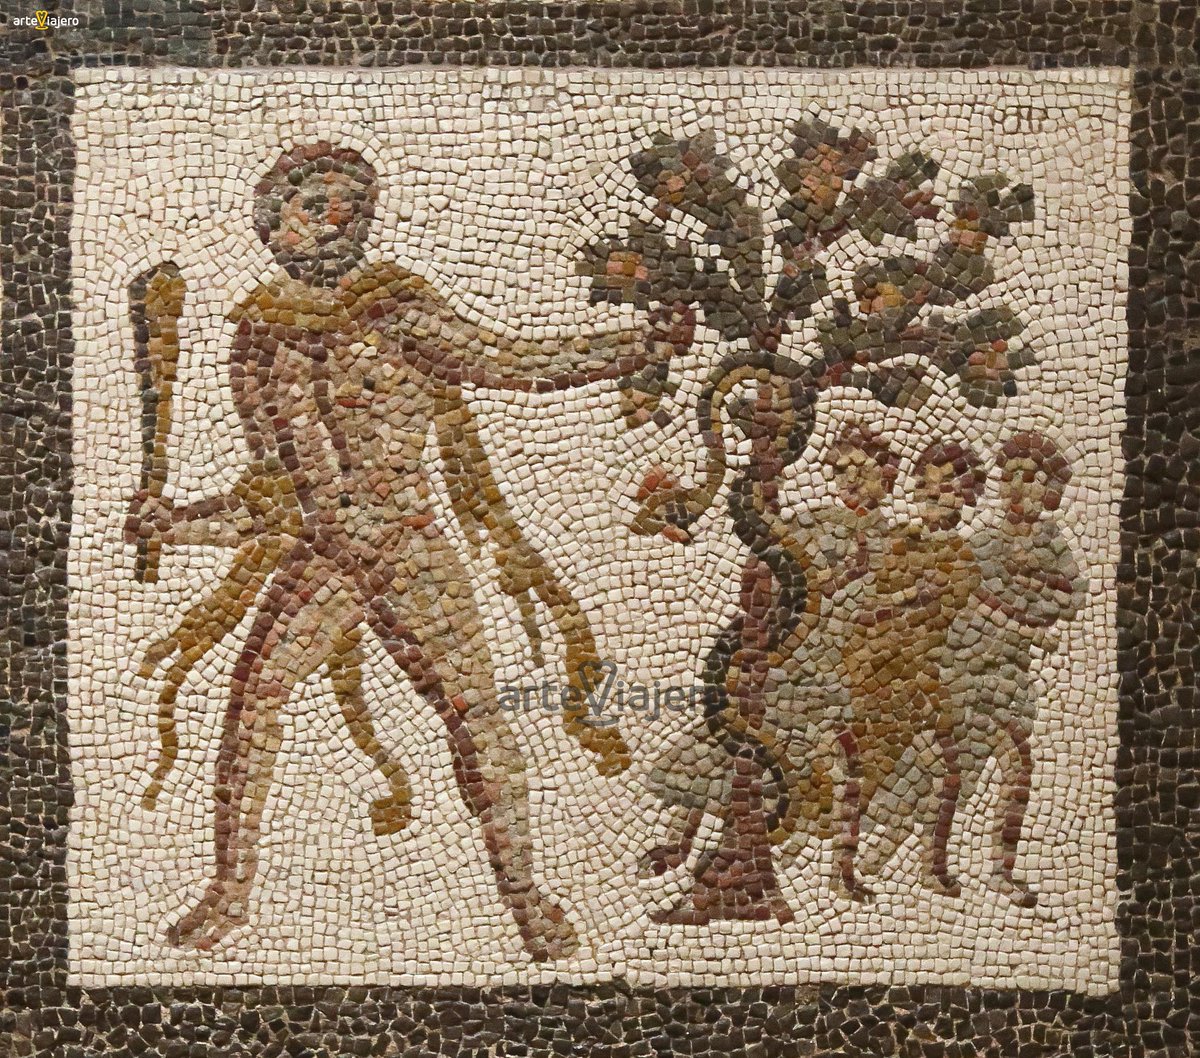 Hoy #1deMayo celebramos el #DiaDelTrabajo con el magnífico mosaico romano de los Doce Trabajos de Hércules. La obra está datada en el S. III d. C y fue encontrada en Llíria (Valencia). En la actualidad se conserva en el Museo Arqueológico Nacional (Madrid) #BuenosDias